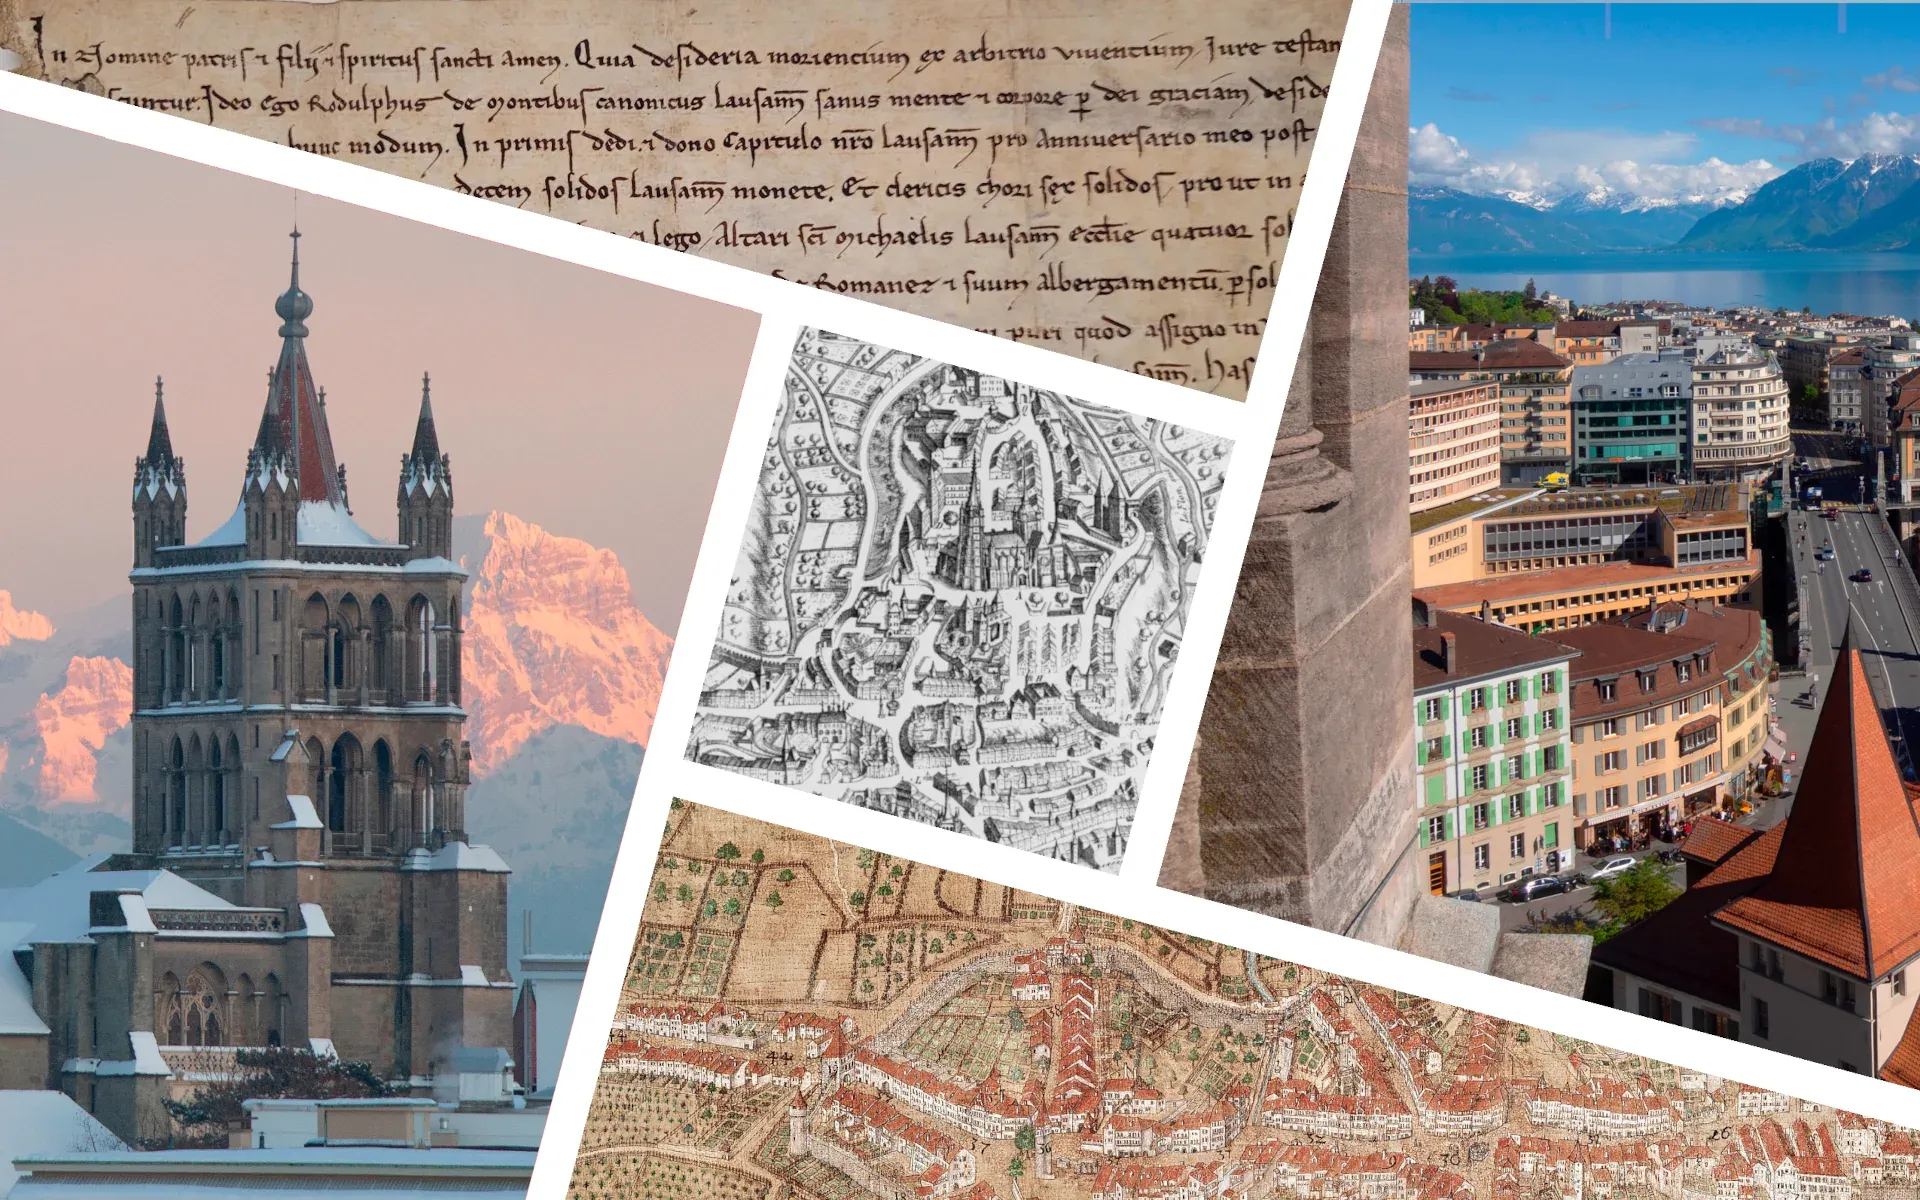 Plusieurs images montrant la cathédrale de Lausanne, des manuscrits médiévaux et des cartes dessinées